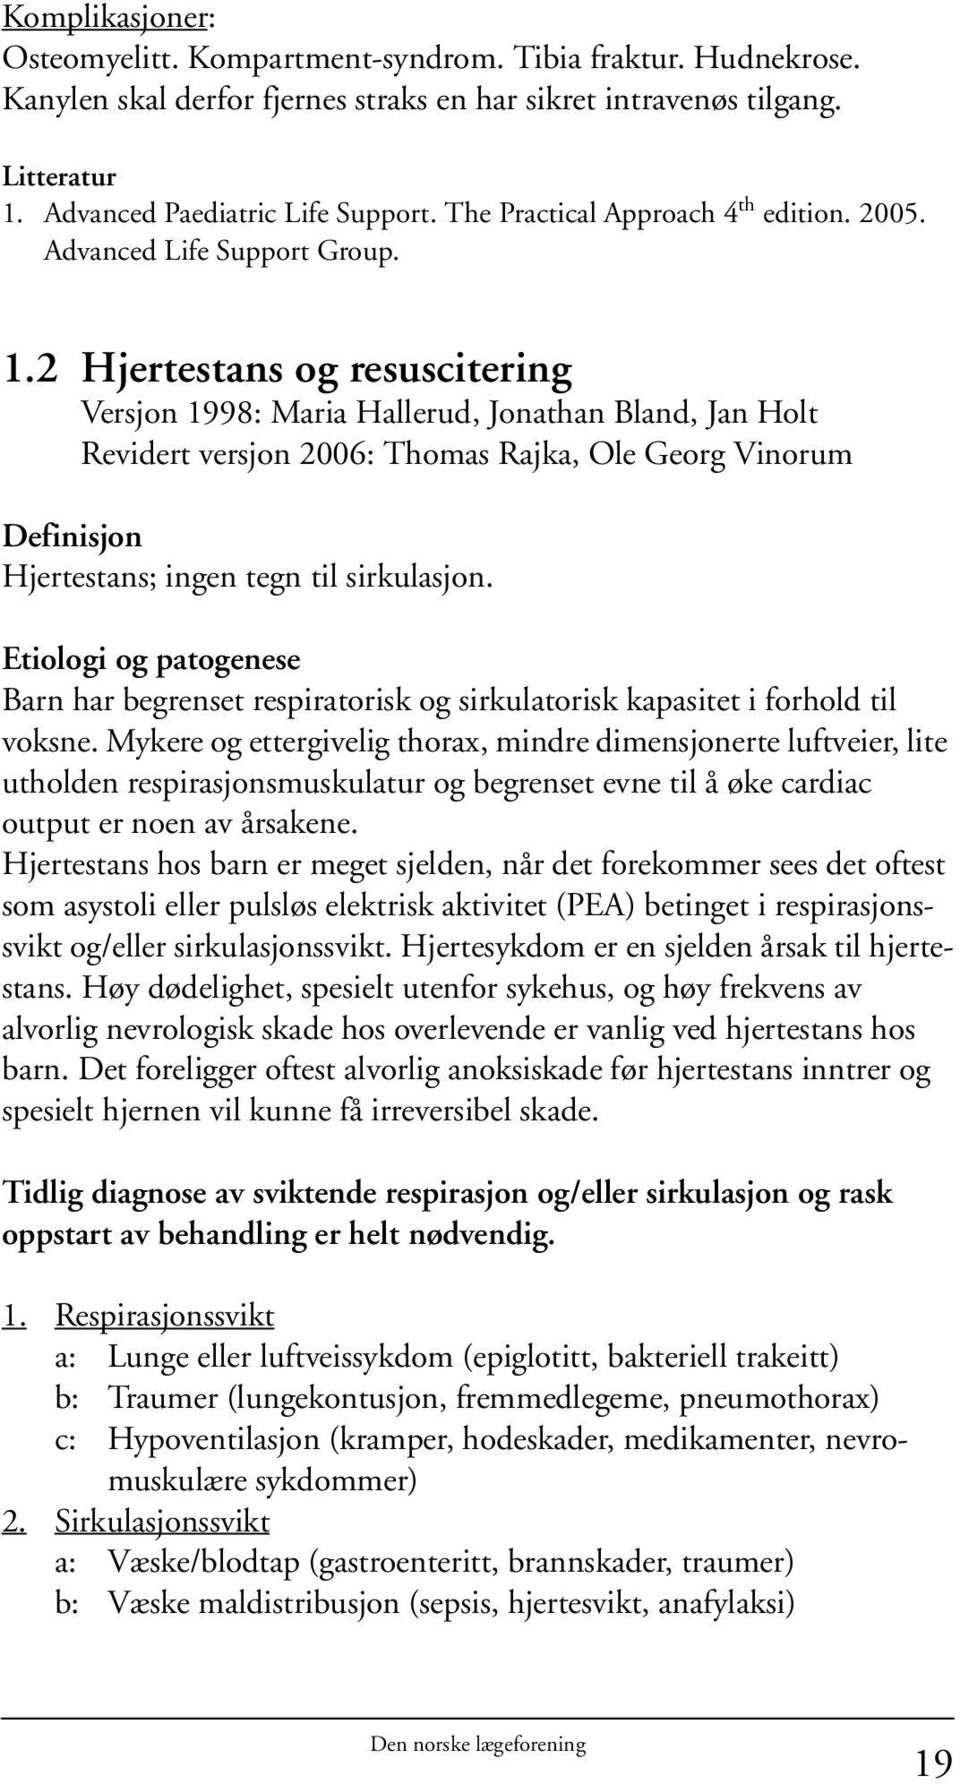 2 Hjertestans og resuscitering Versjon 1998: Maria Hallerud, Jonathan Bland, Jan Holt Revidert versjon 2006: Thomas Rajka, Ole Georg Vinorum Definisjon Hjertestans; ingen tegn til sirkulasjon.